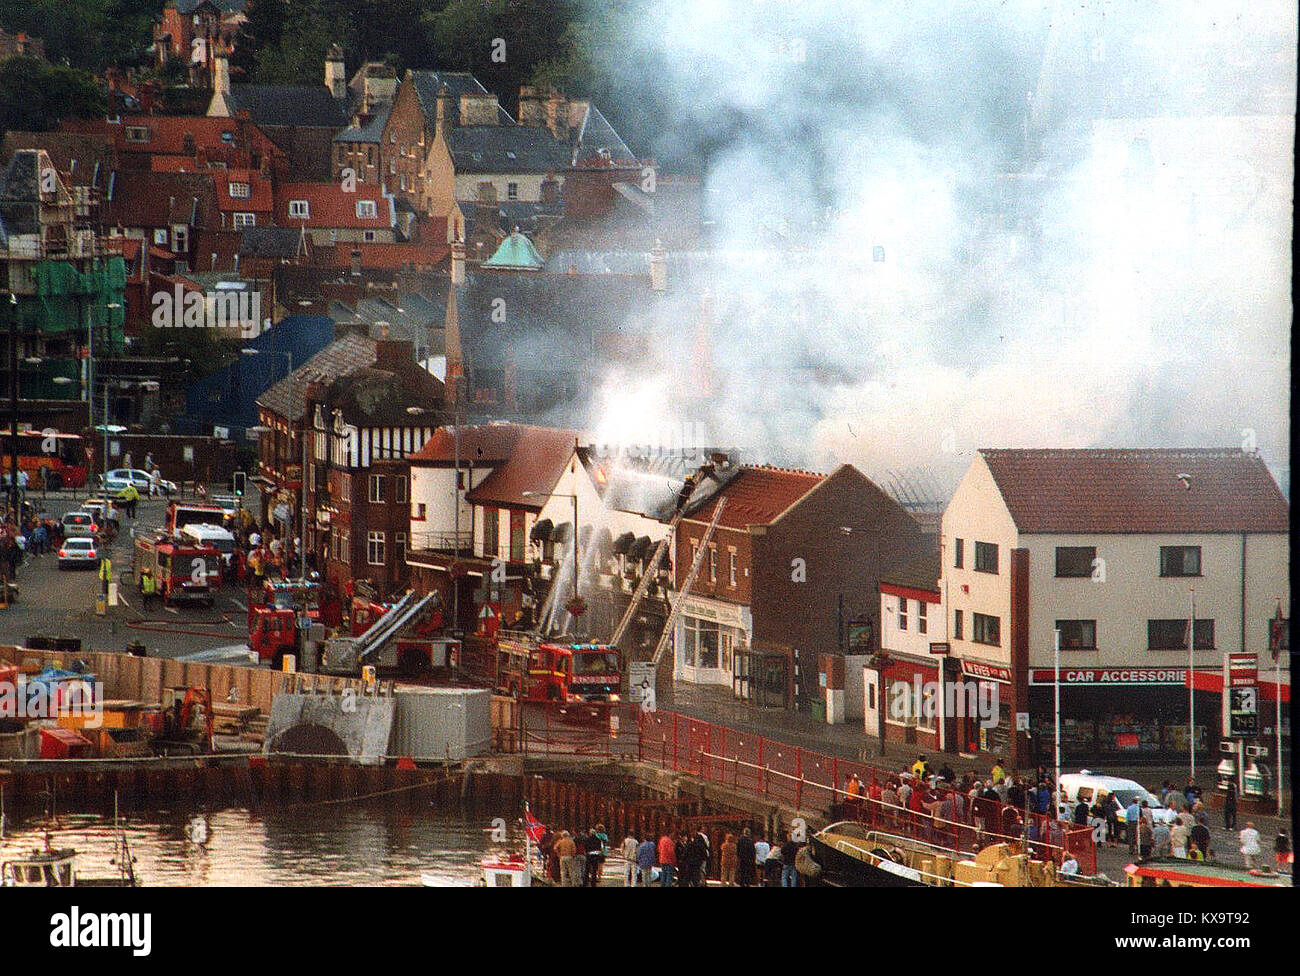 1999 - New Quay Road, Whitby come fu allora. I vigili del fuoco sono visti affrontare un grave incendio a Trenchers ristorante. Foto Stock